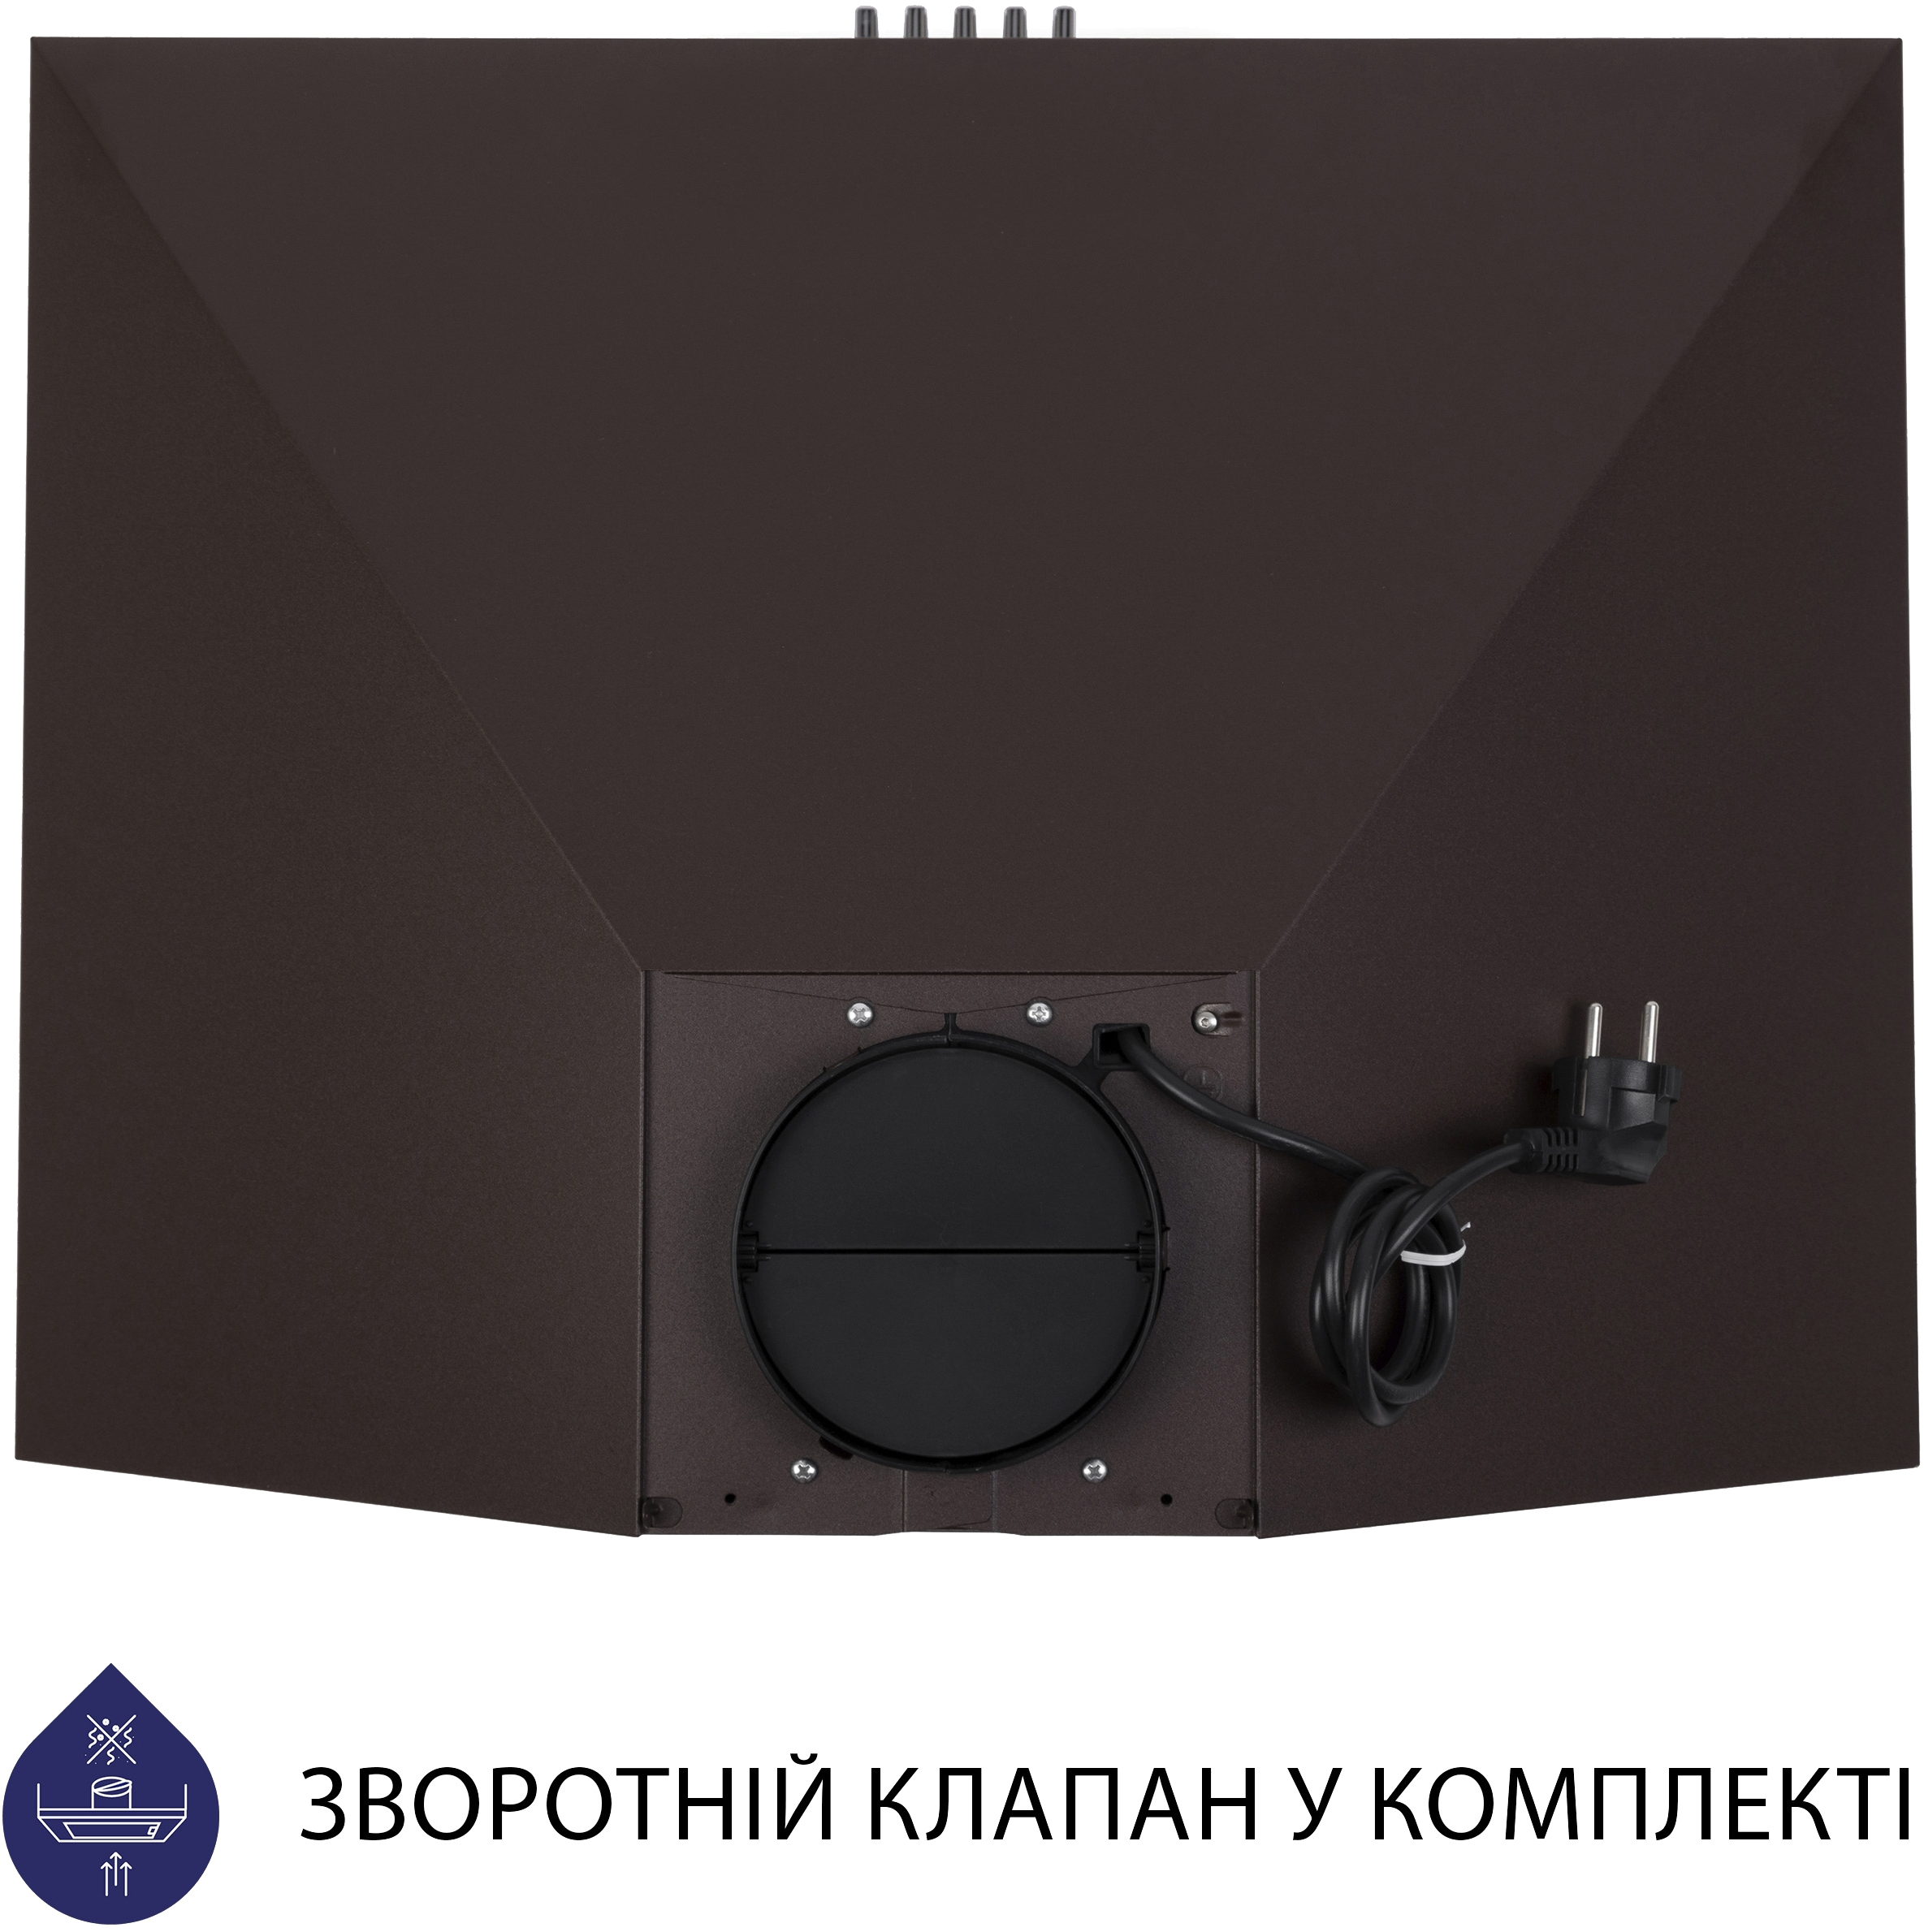 Кухонна витяжка Minola HK 6212 BR 700 LED характеристики - фотографія 7